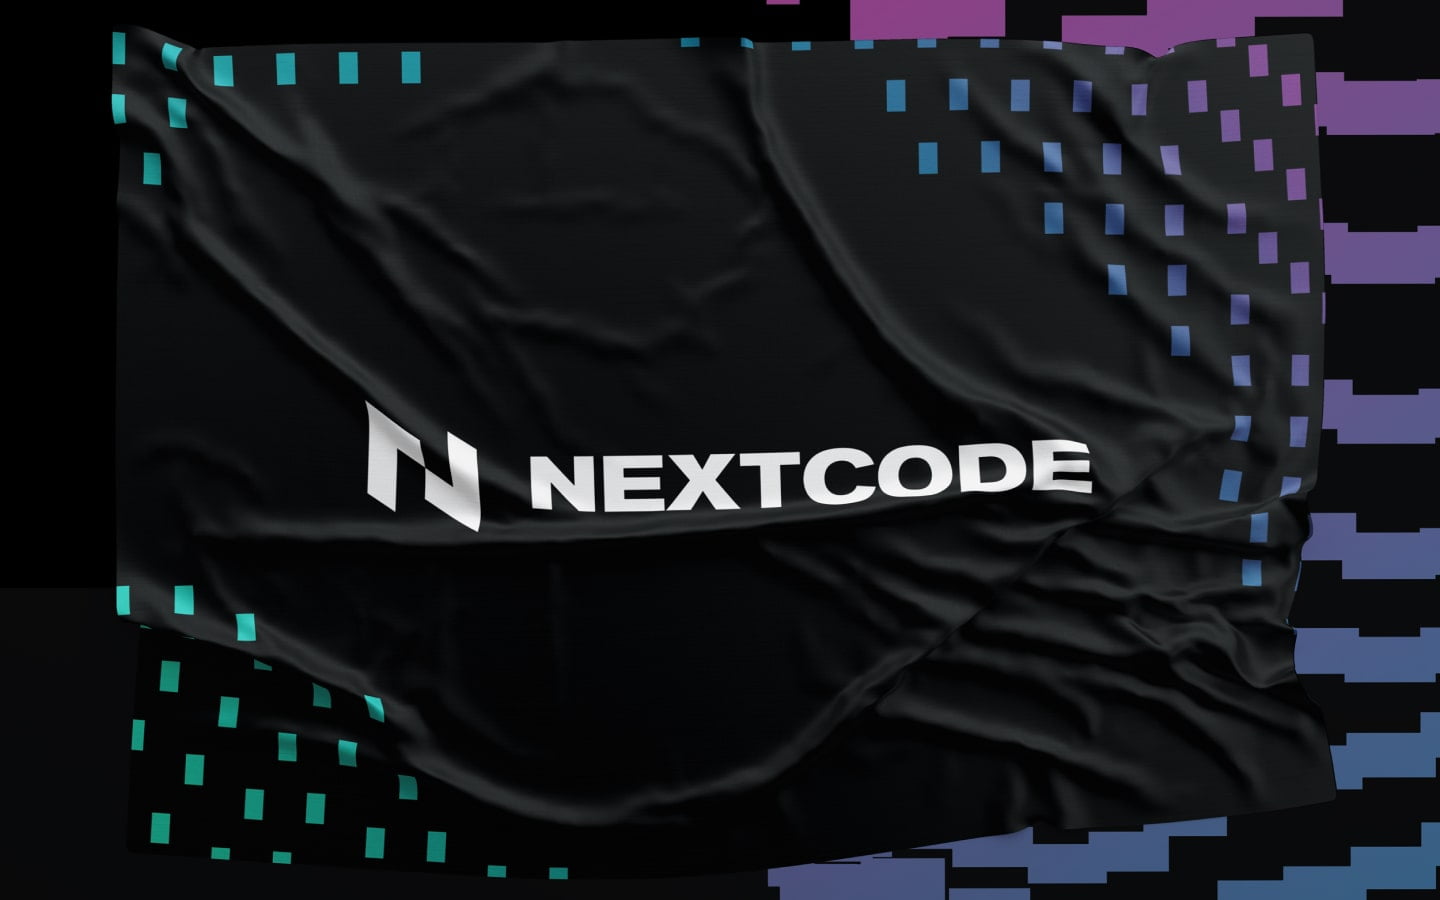 Desenvolvedora de bancos digitais conta com Onboarding Checking da Nextcode